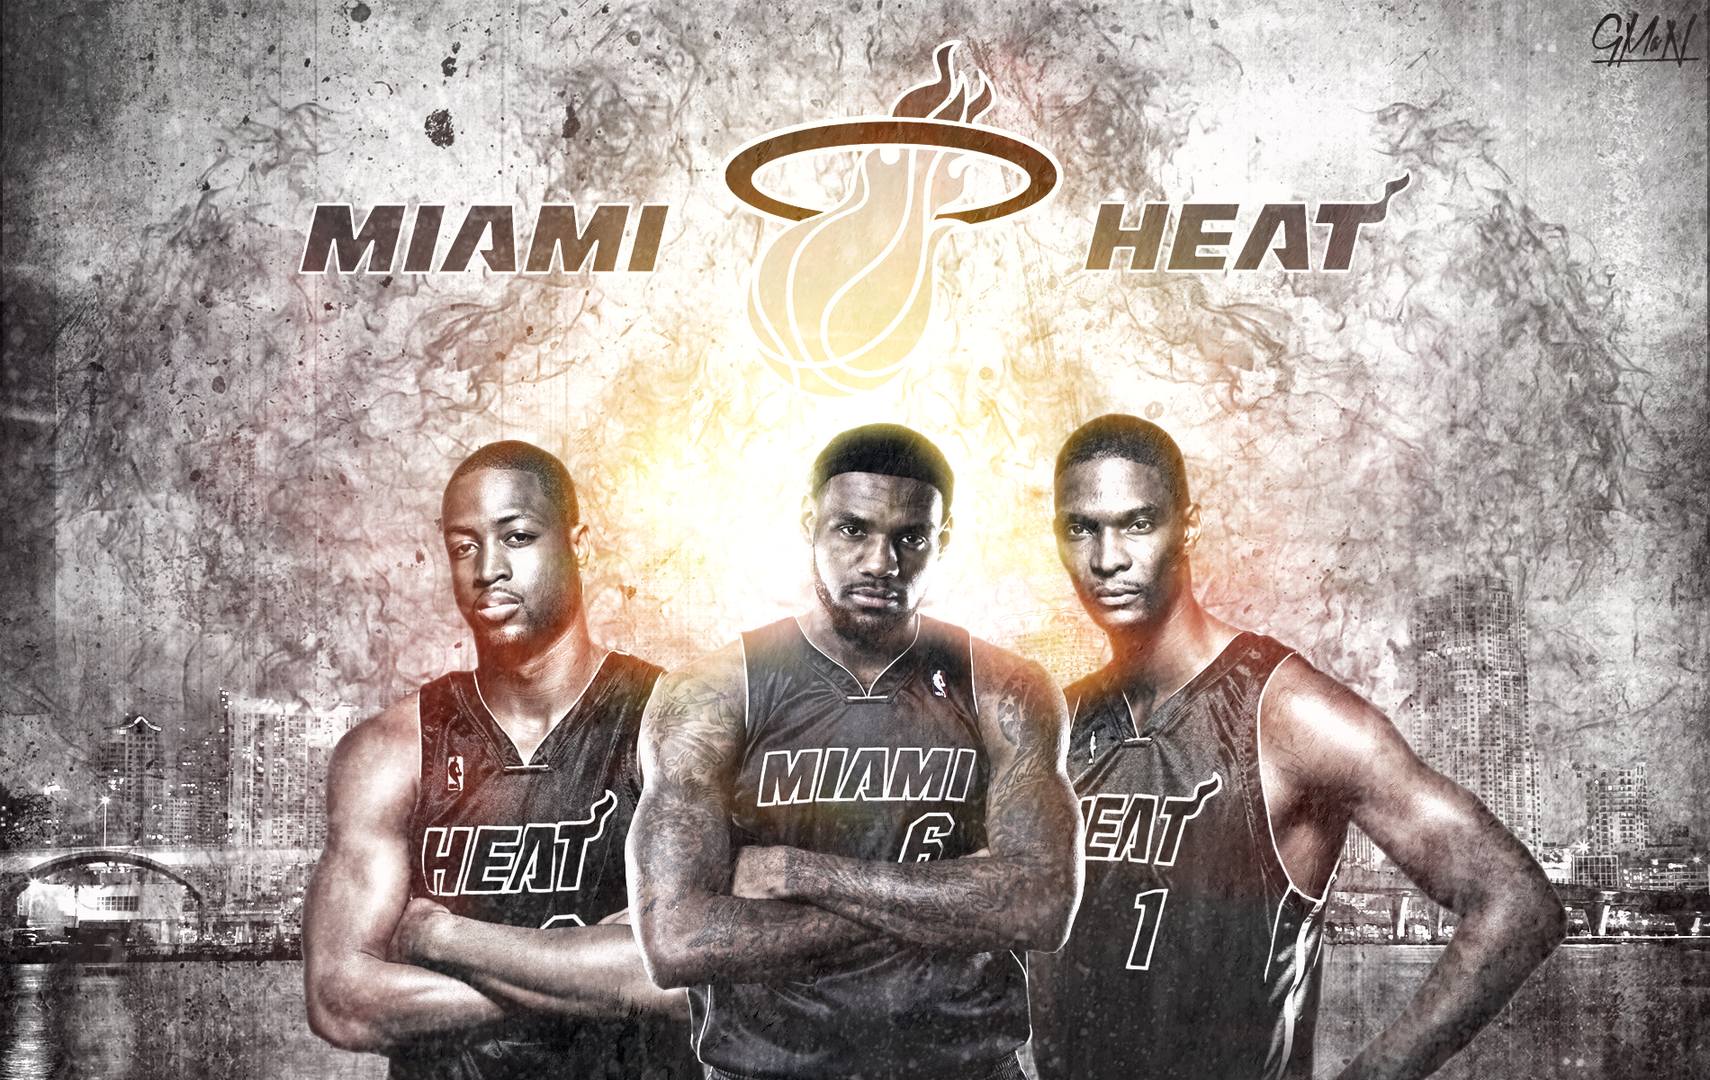 Miami Heat wallpaper HD free download